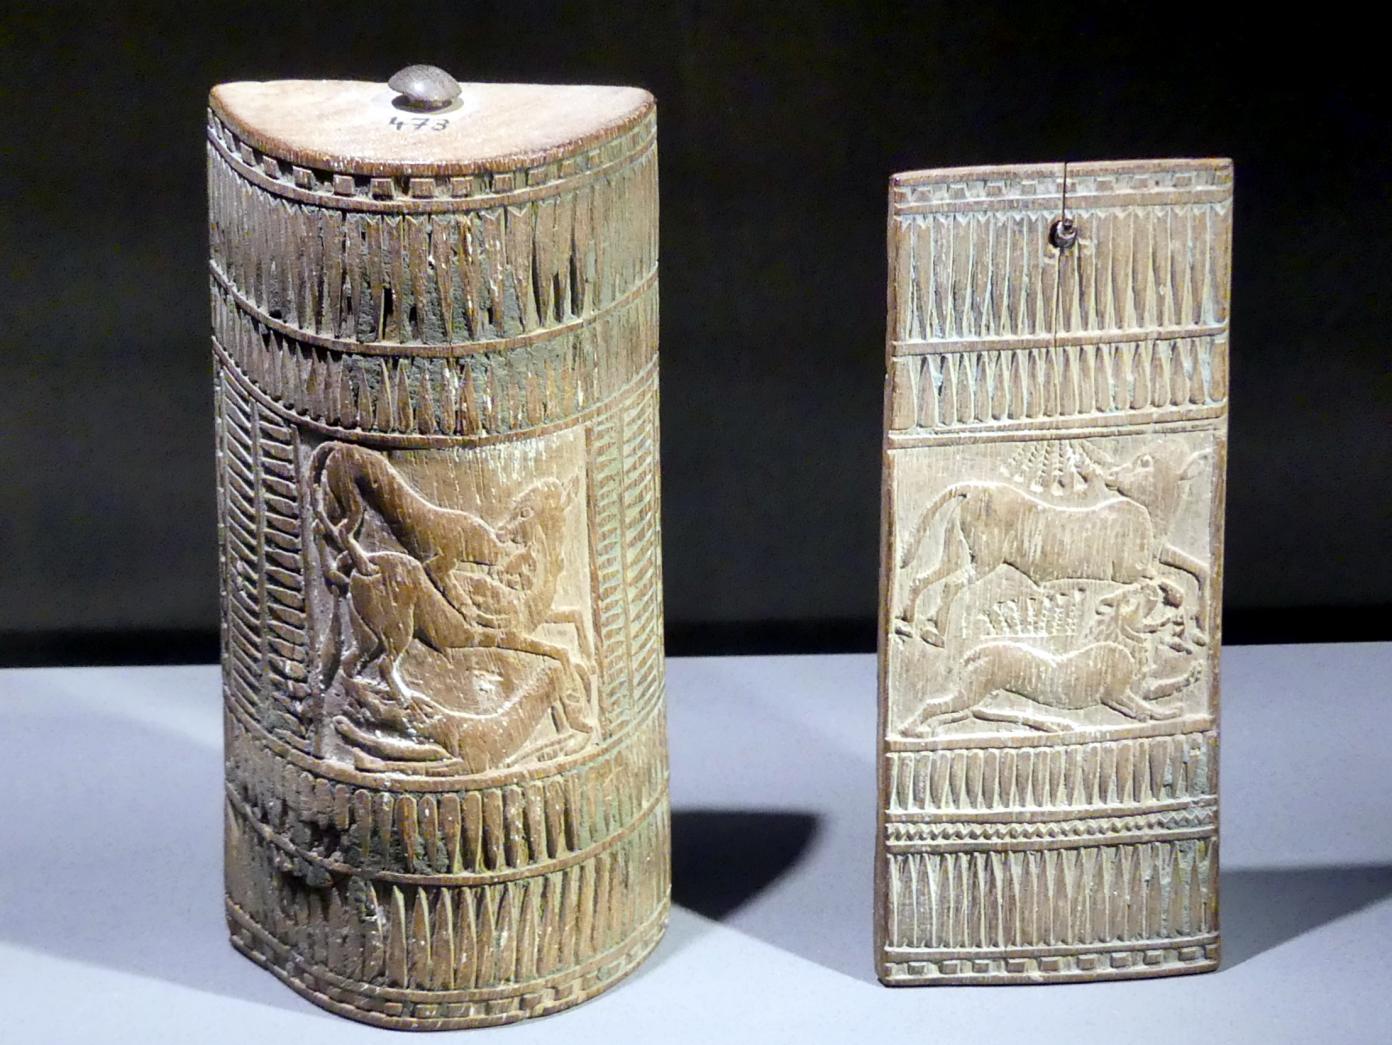 Kosmetikkästchen, 18. Dynastie, Undatiert, 1350 v. Chr., Bild 1/2